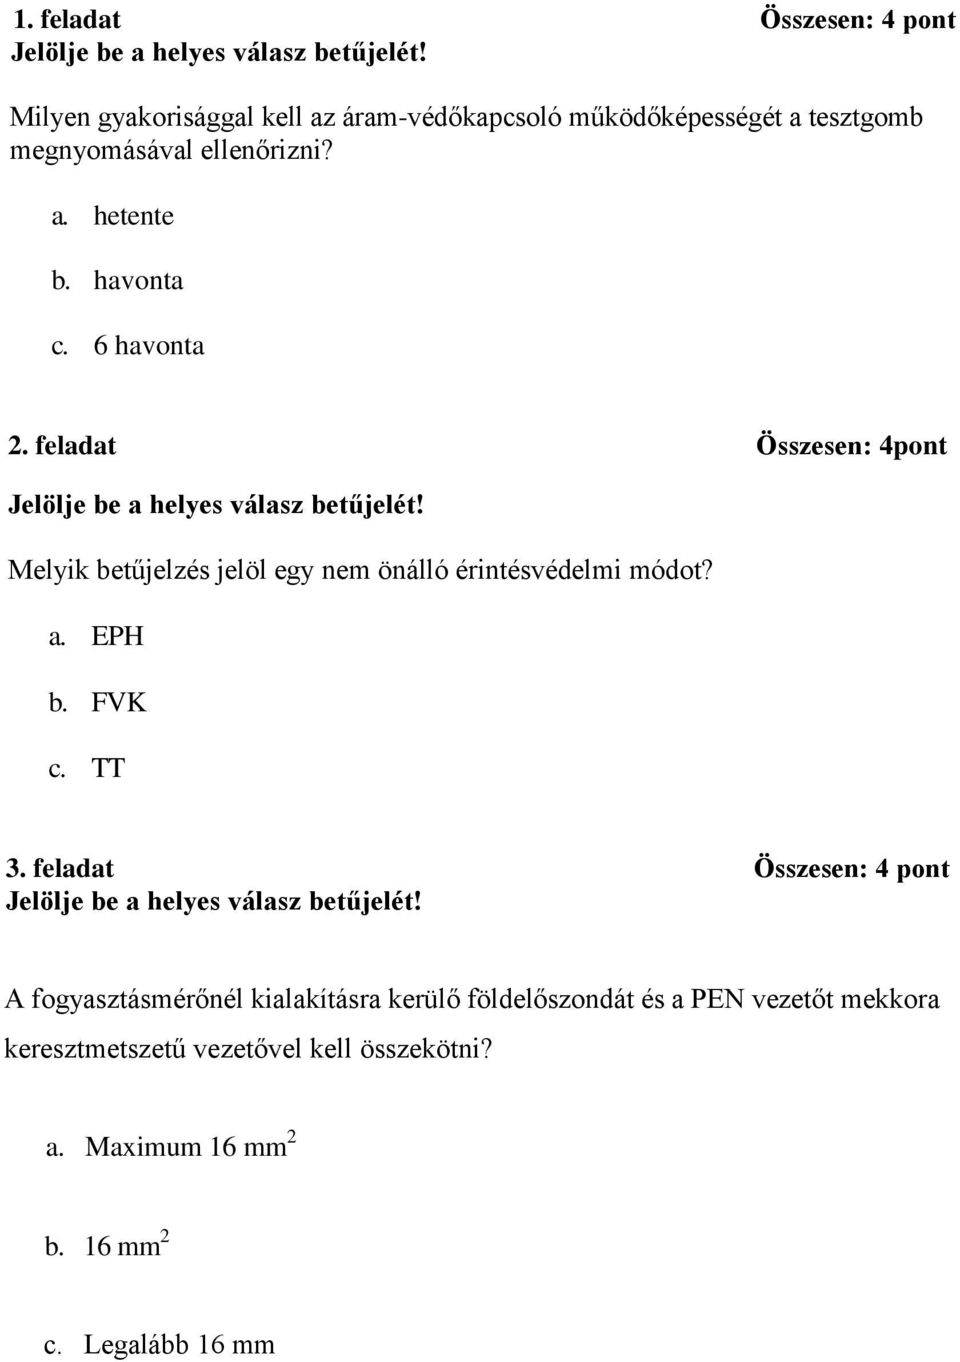 feladat Összesen: 4pont Melyik betűjelzés jelöl egy nem önálló érintésvédelmi módot? a. EPH b. FVK c. TT 3.